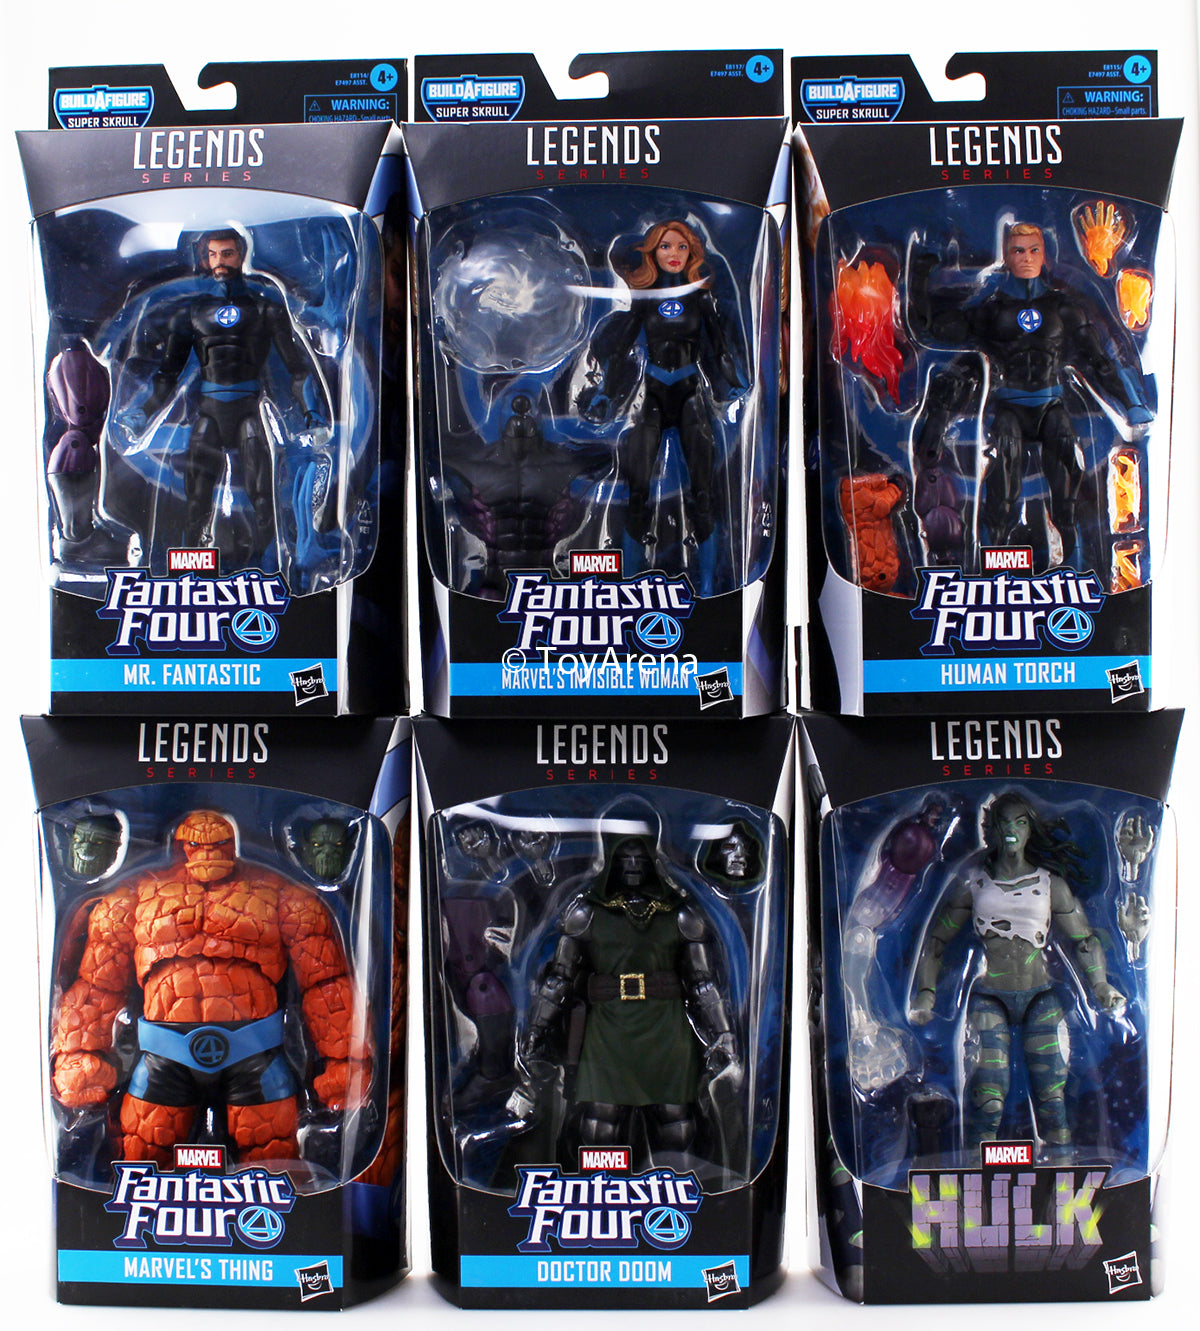 Marvel Legends Fantastic Four Wave 1 Set of 6 BAF Super Skrull Action Figures